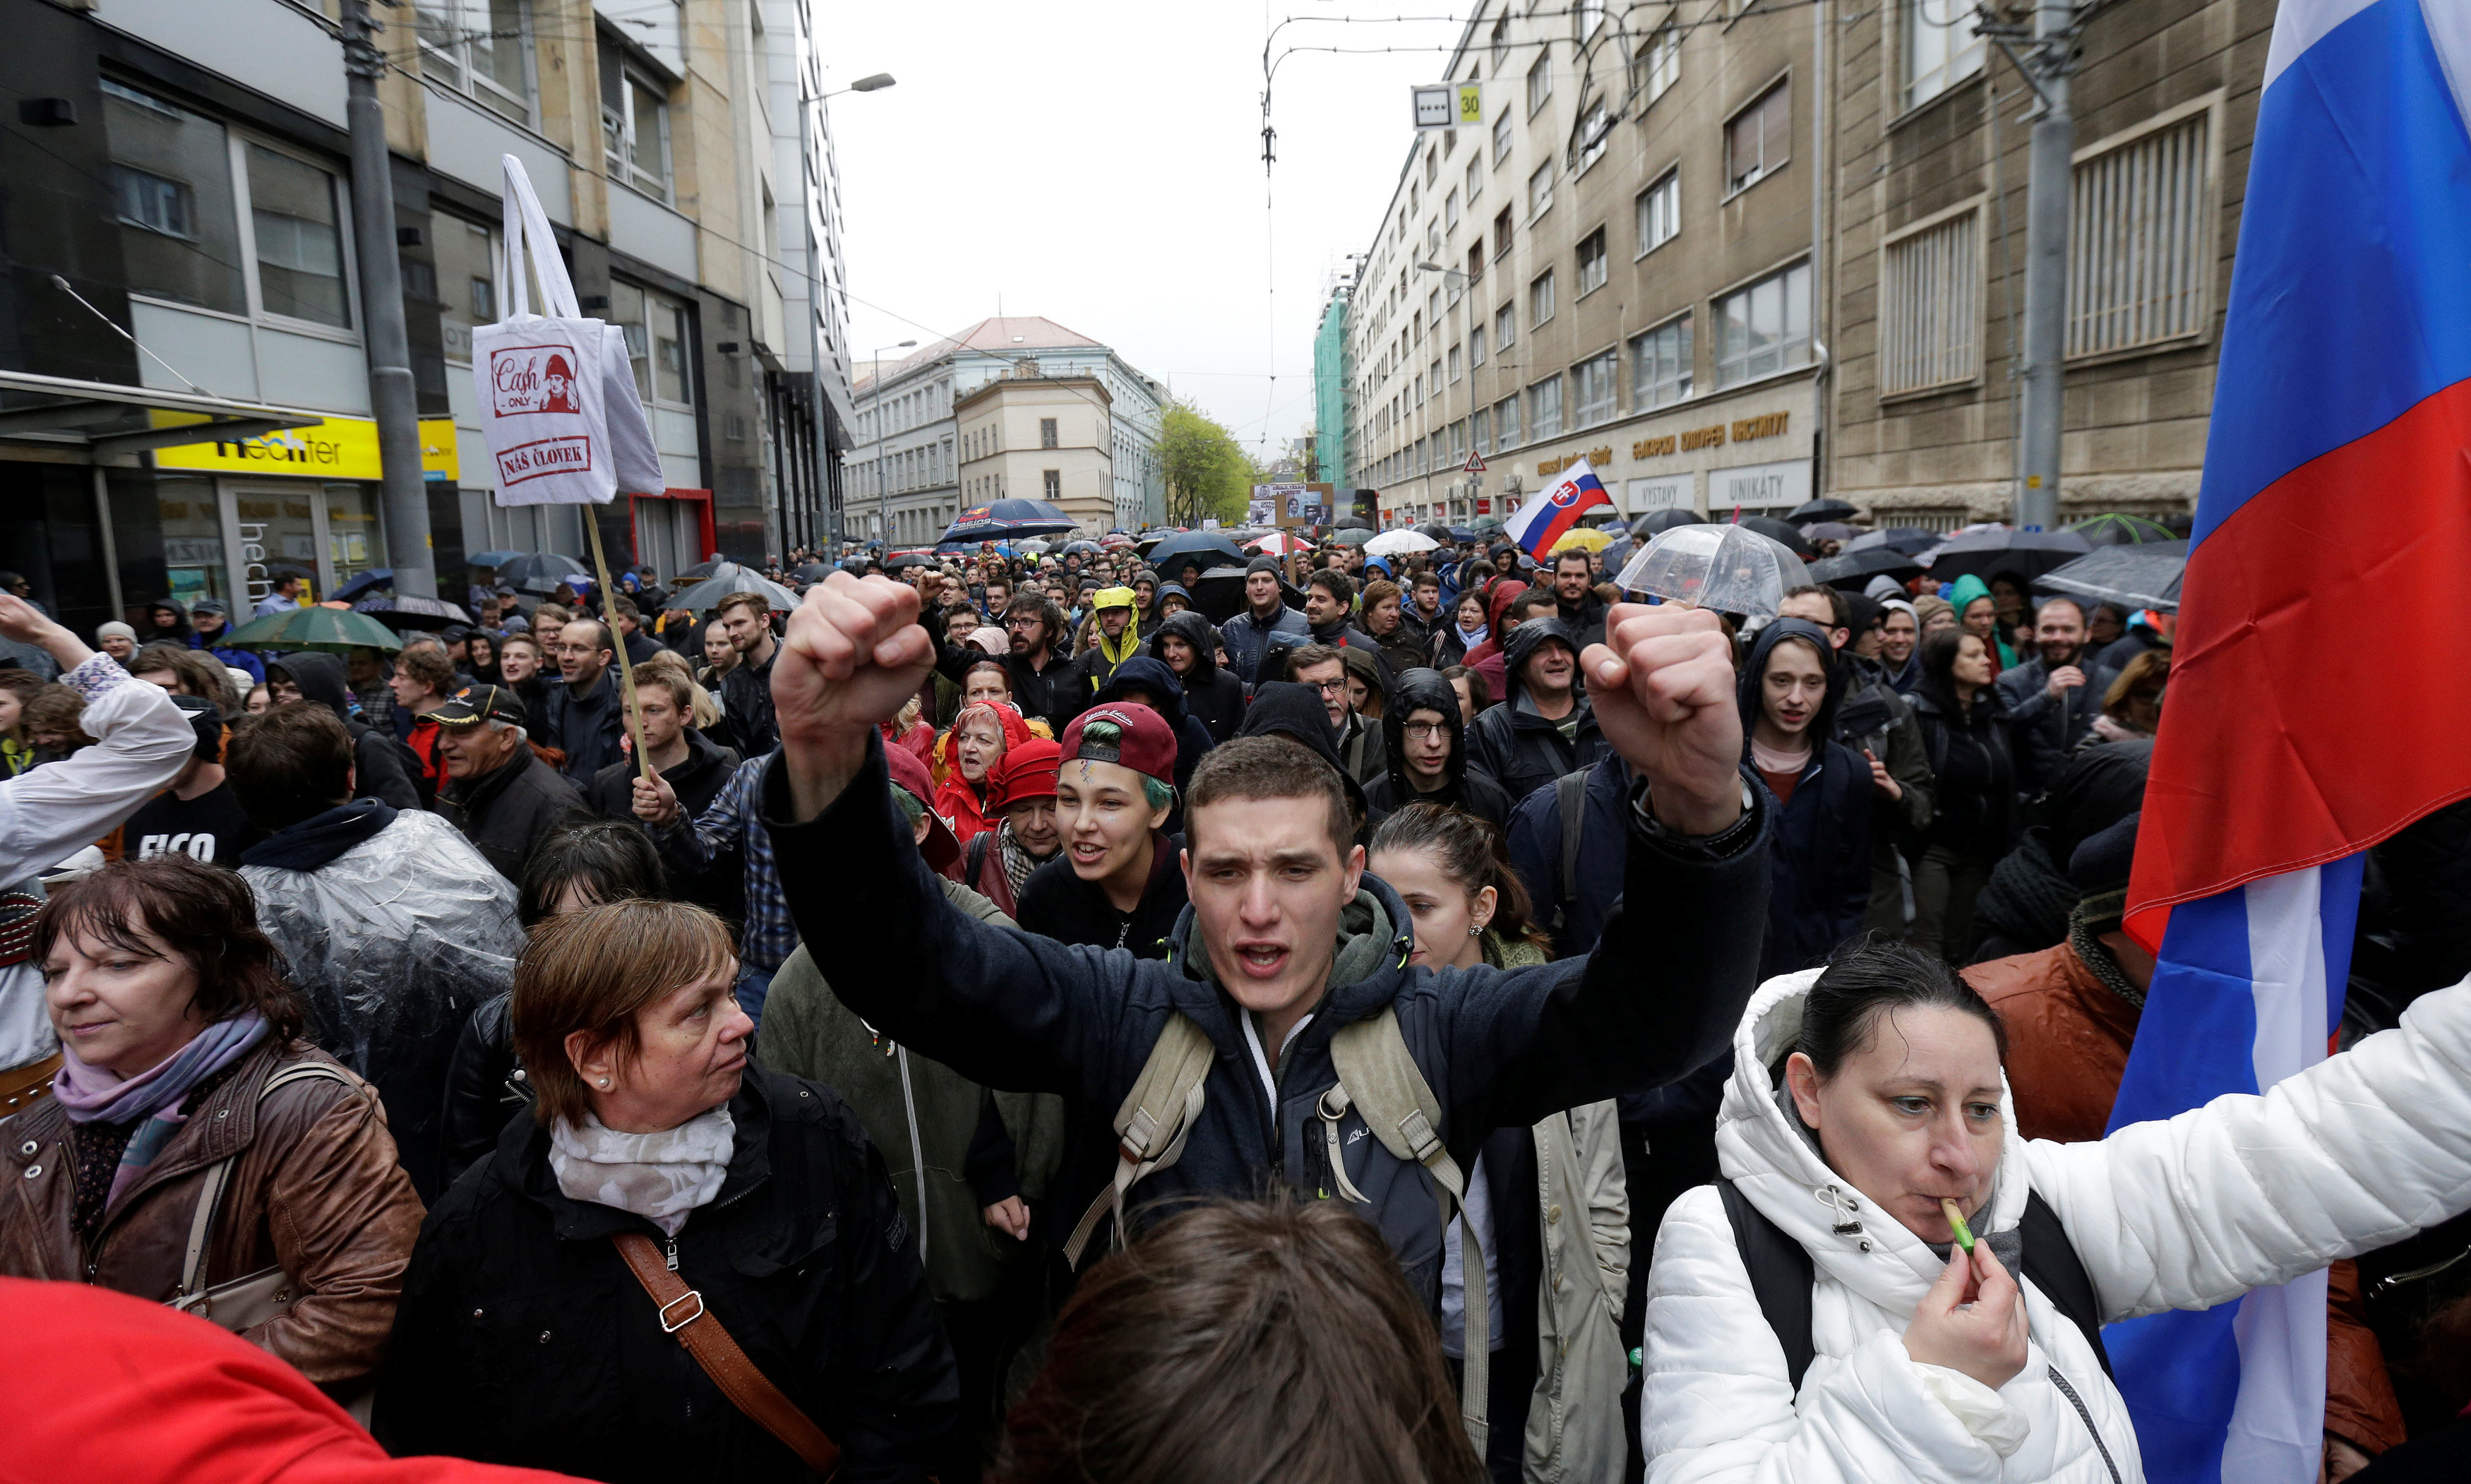 تظاهرات تطالب باستقالة وزير الداخلية ورئيس الشرطة فى براتيسلافا